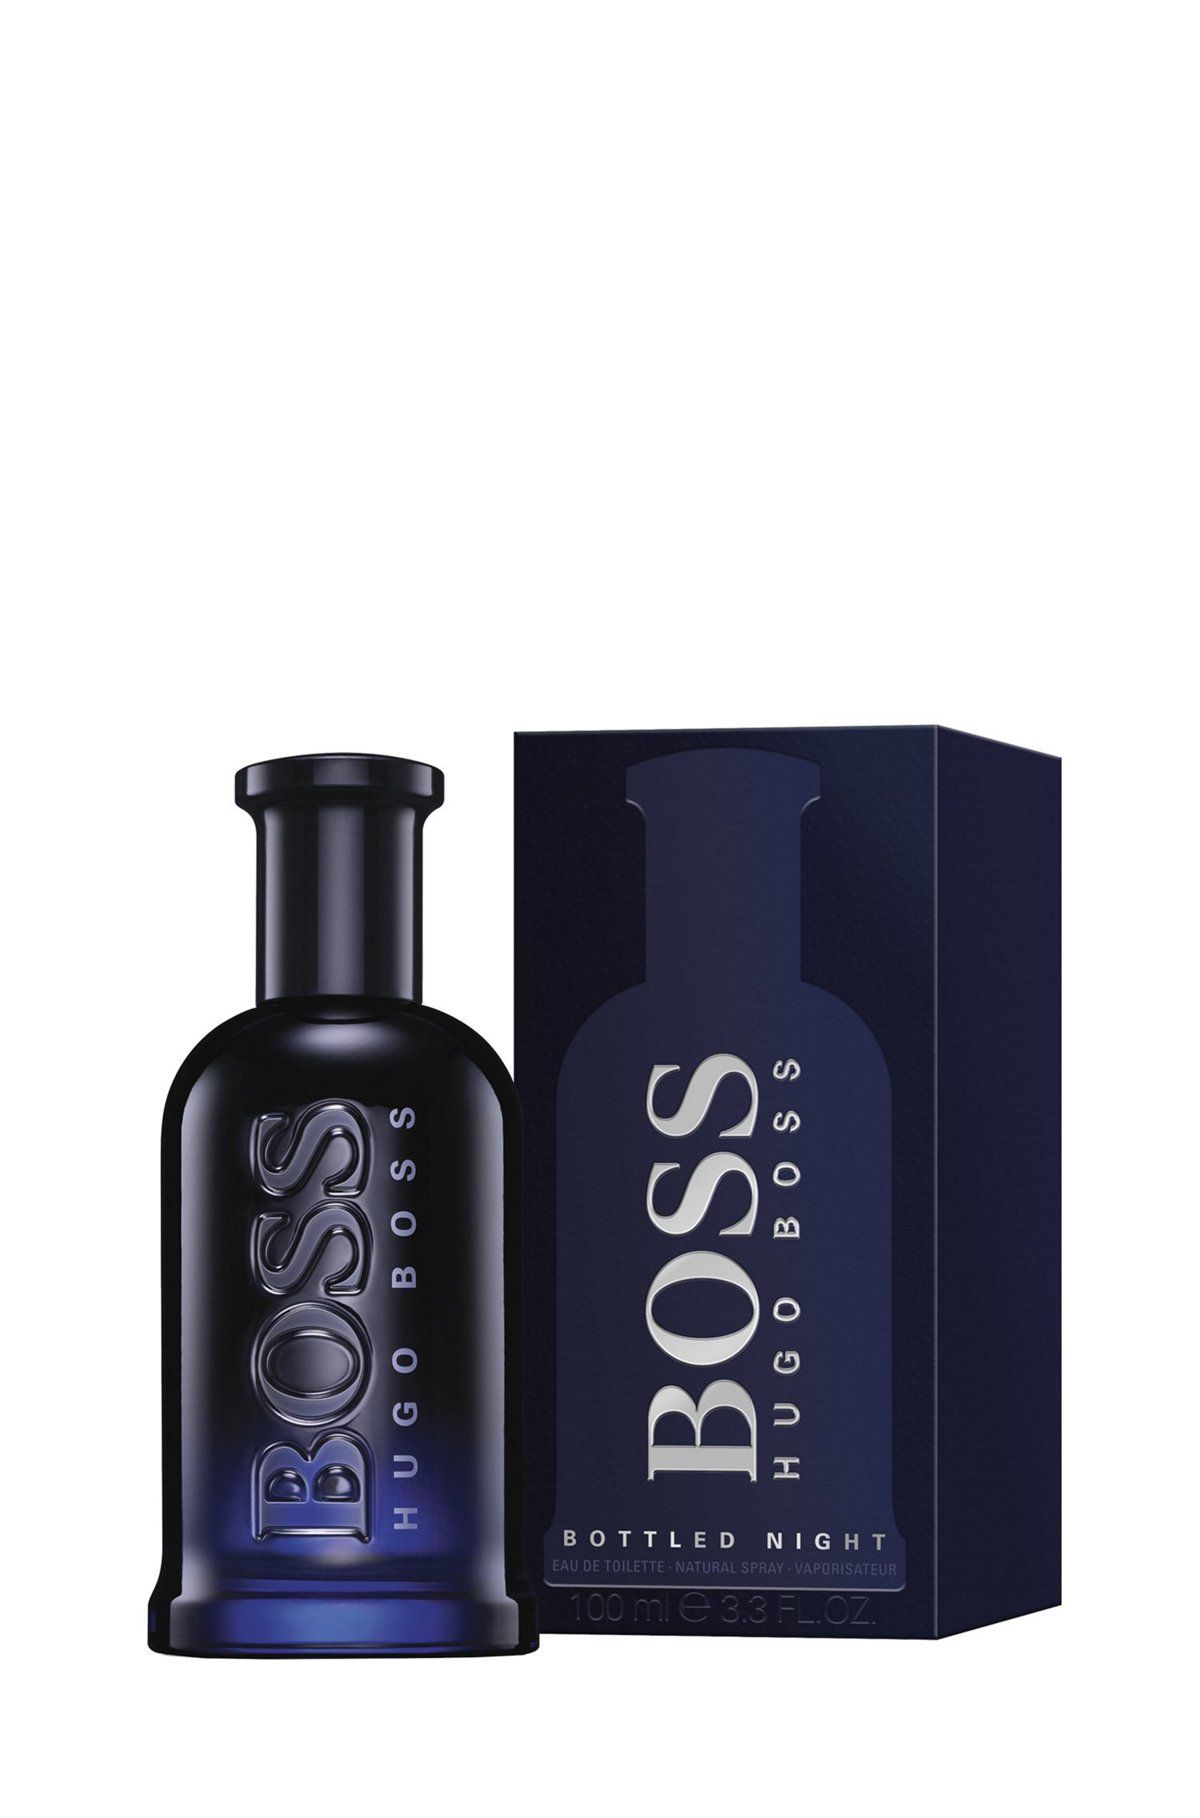 Hugo Boss Bottled Night 100 ml. Hugo Boss Bottled Night. EDT. 100 Ml. Hugo Boss Boss Bottled Night Eau de Toilette. Hugo Boss - Bottled Night 100мл.